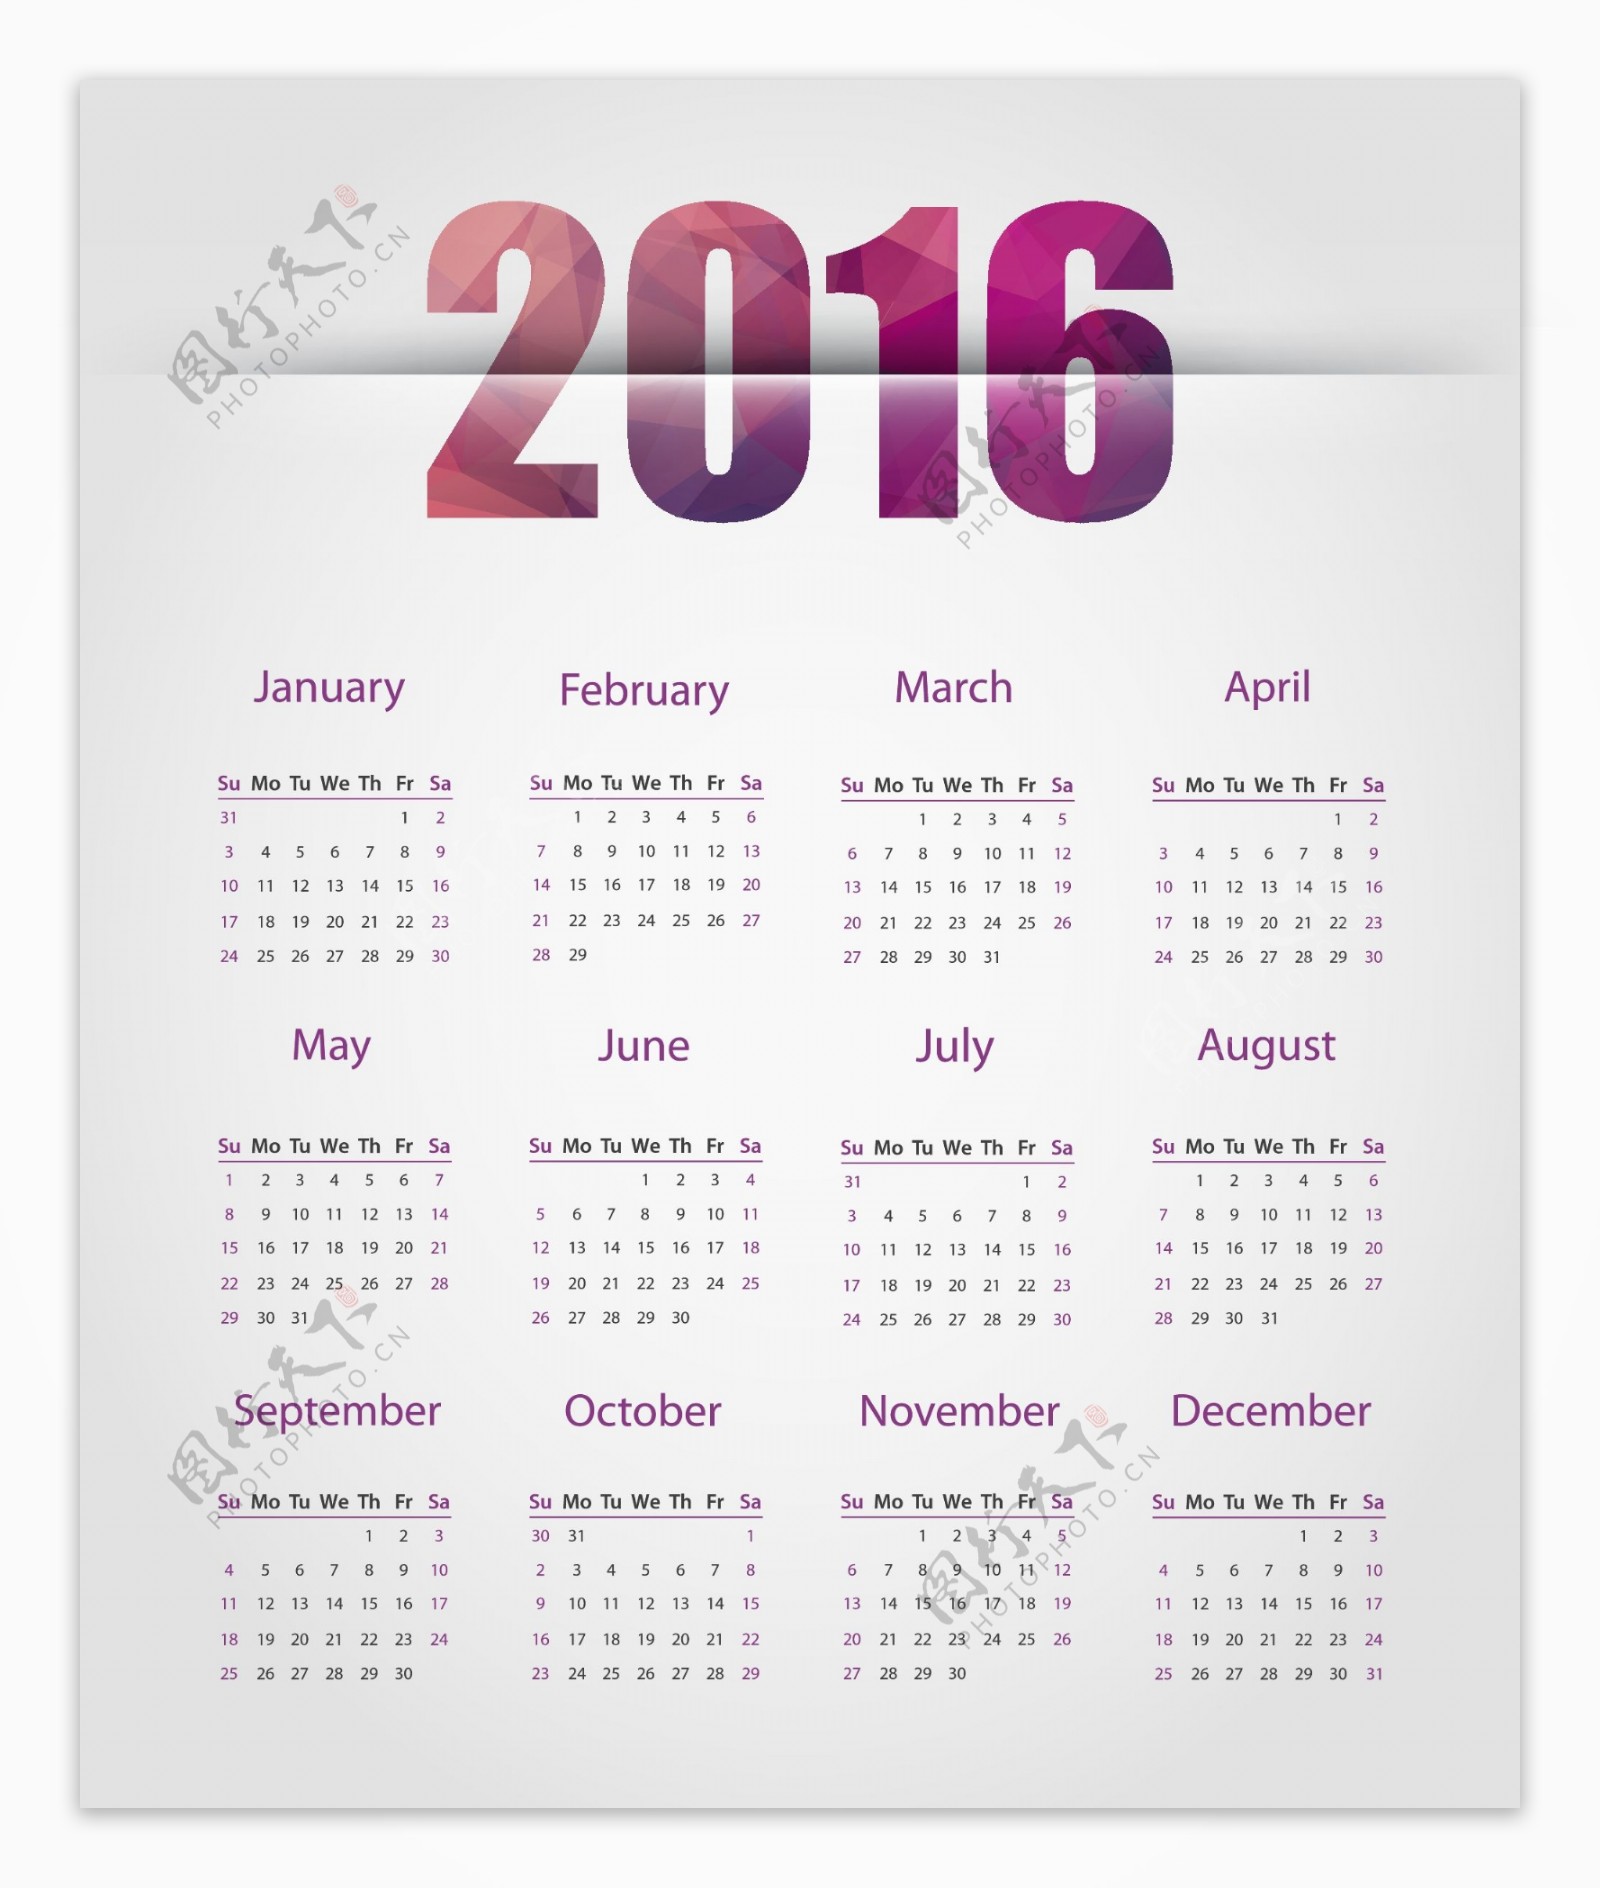 简约2016年日历表图片